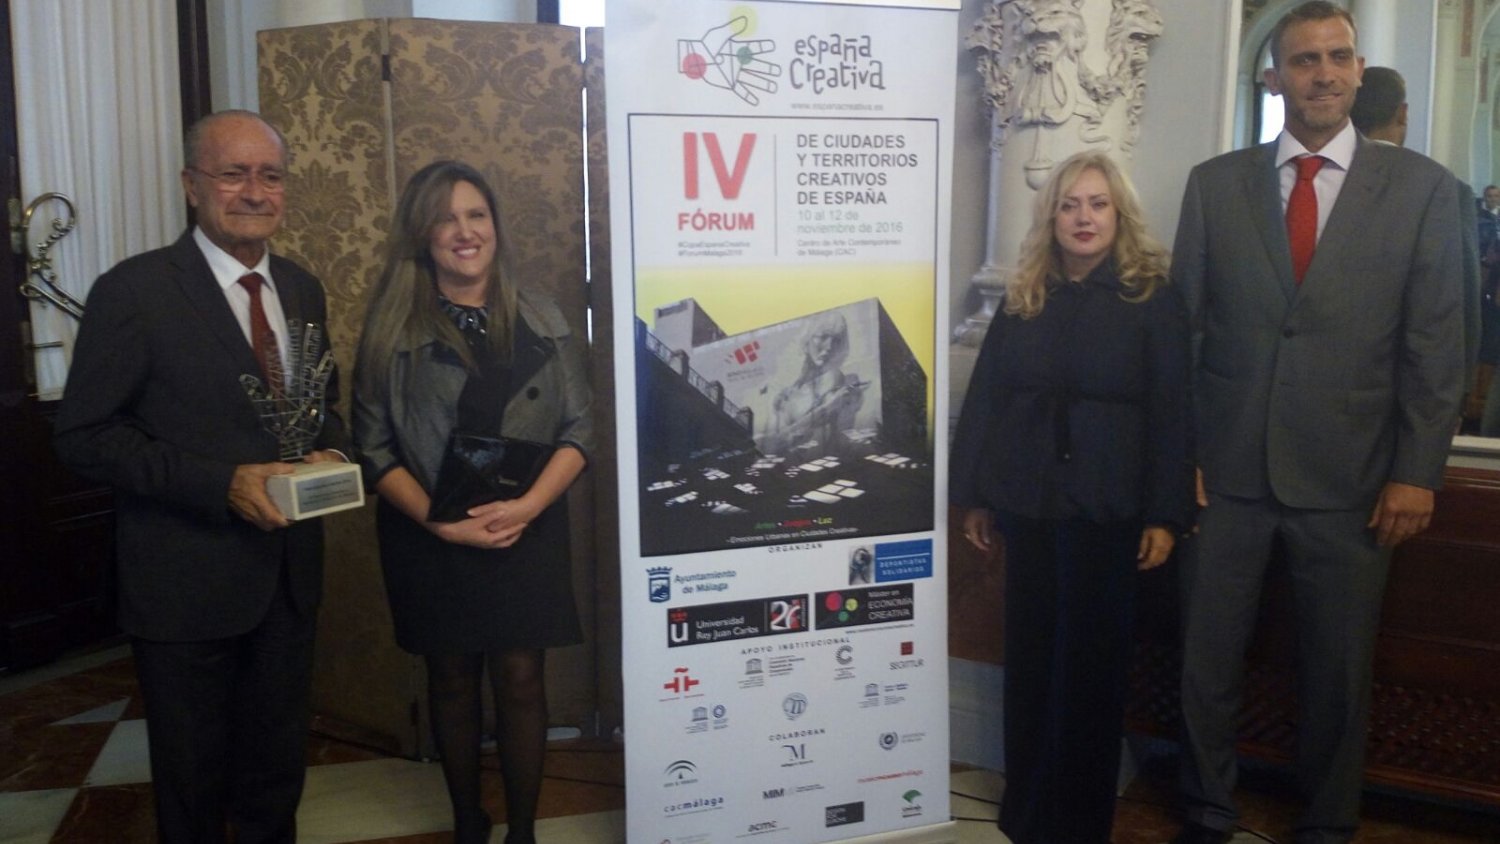 Málaga celebra el IV Fórum de Ciudades y Territorios Creativos de España